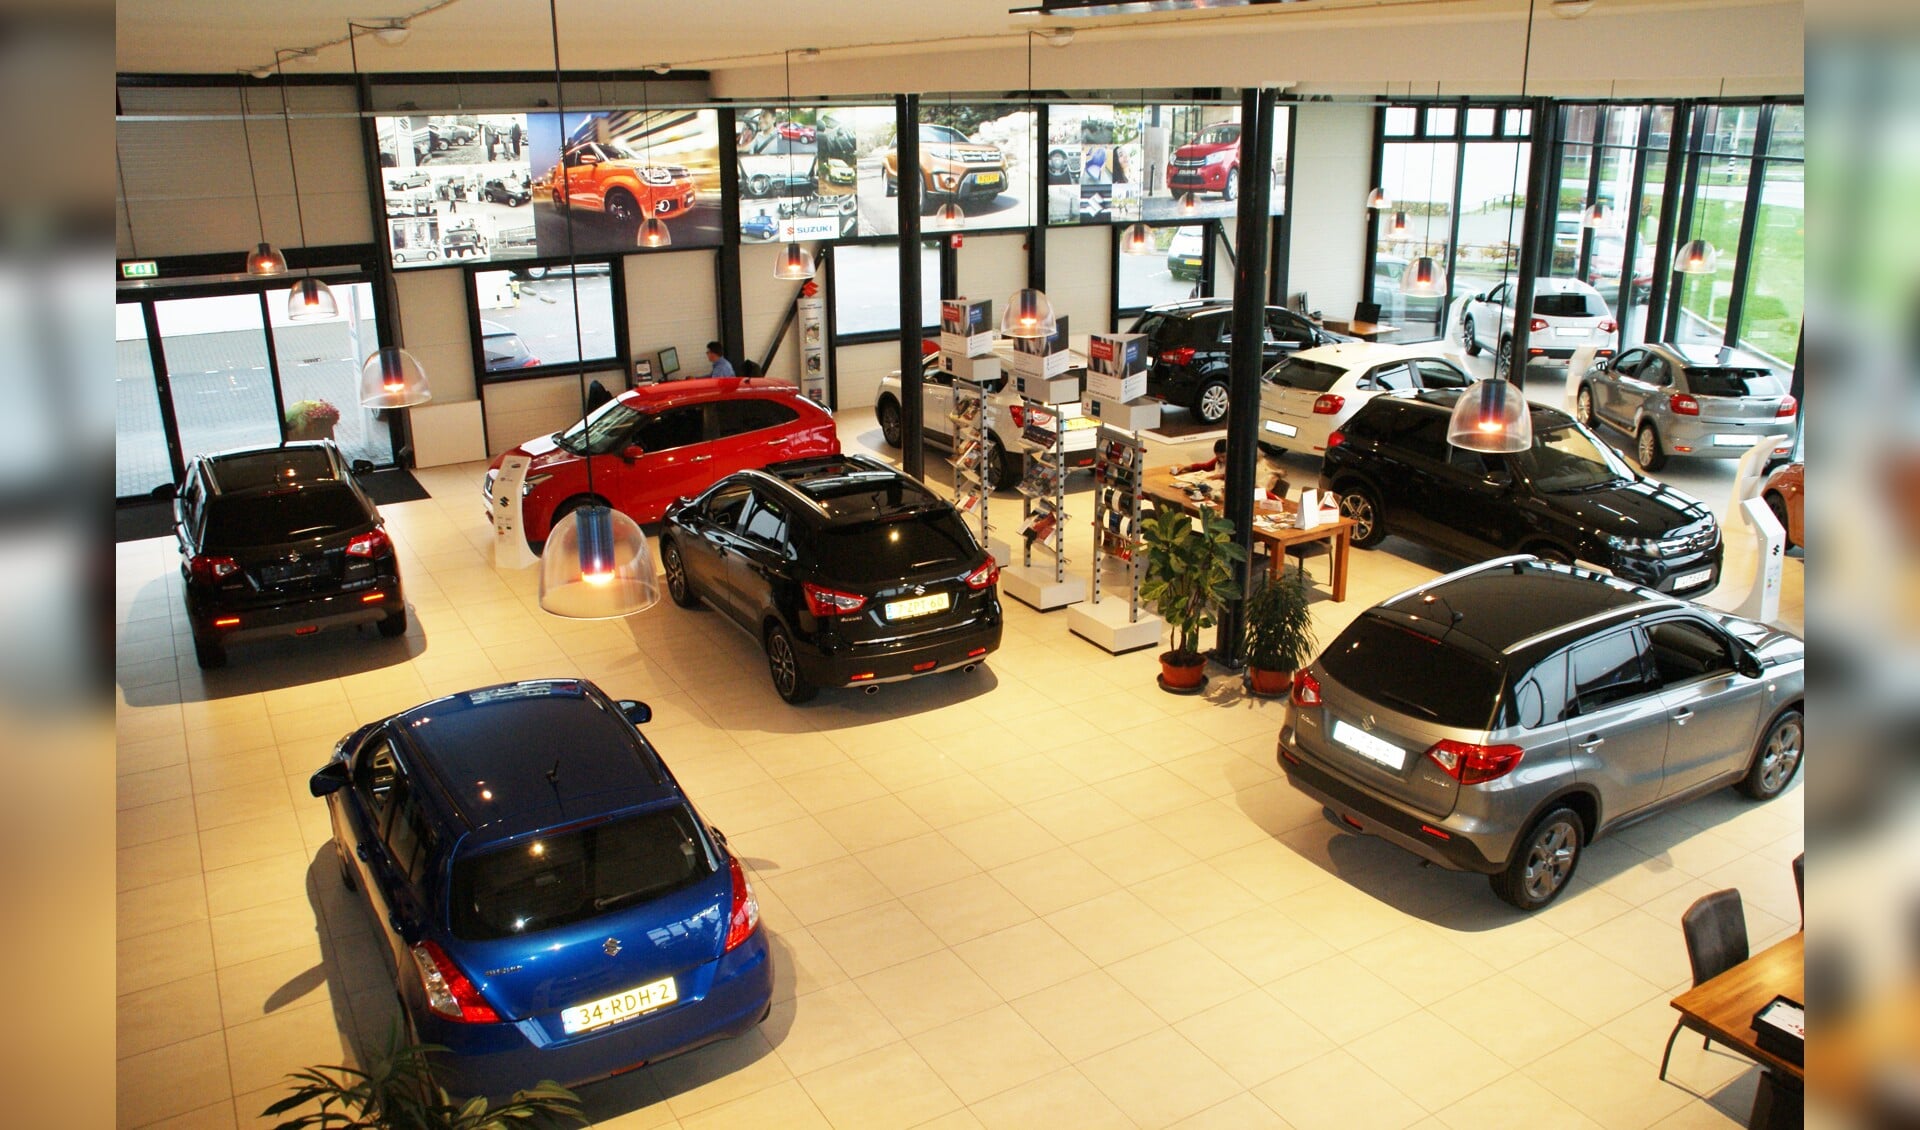 Een bovenaanzicht van de showroom vol nieuwe Suzuki-modellen.